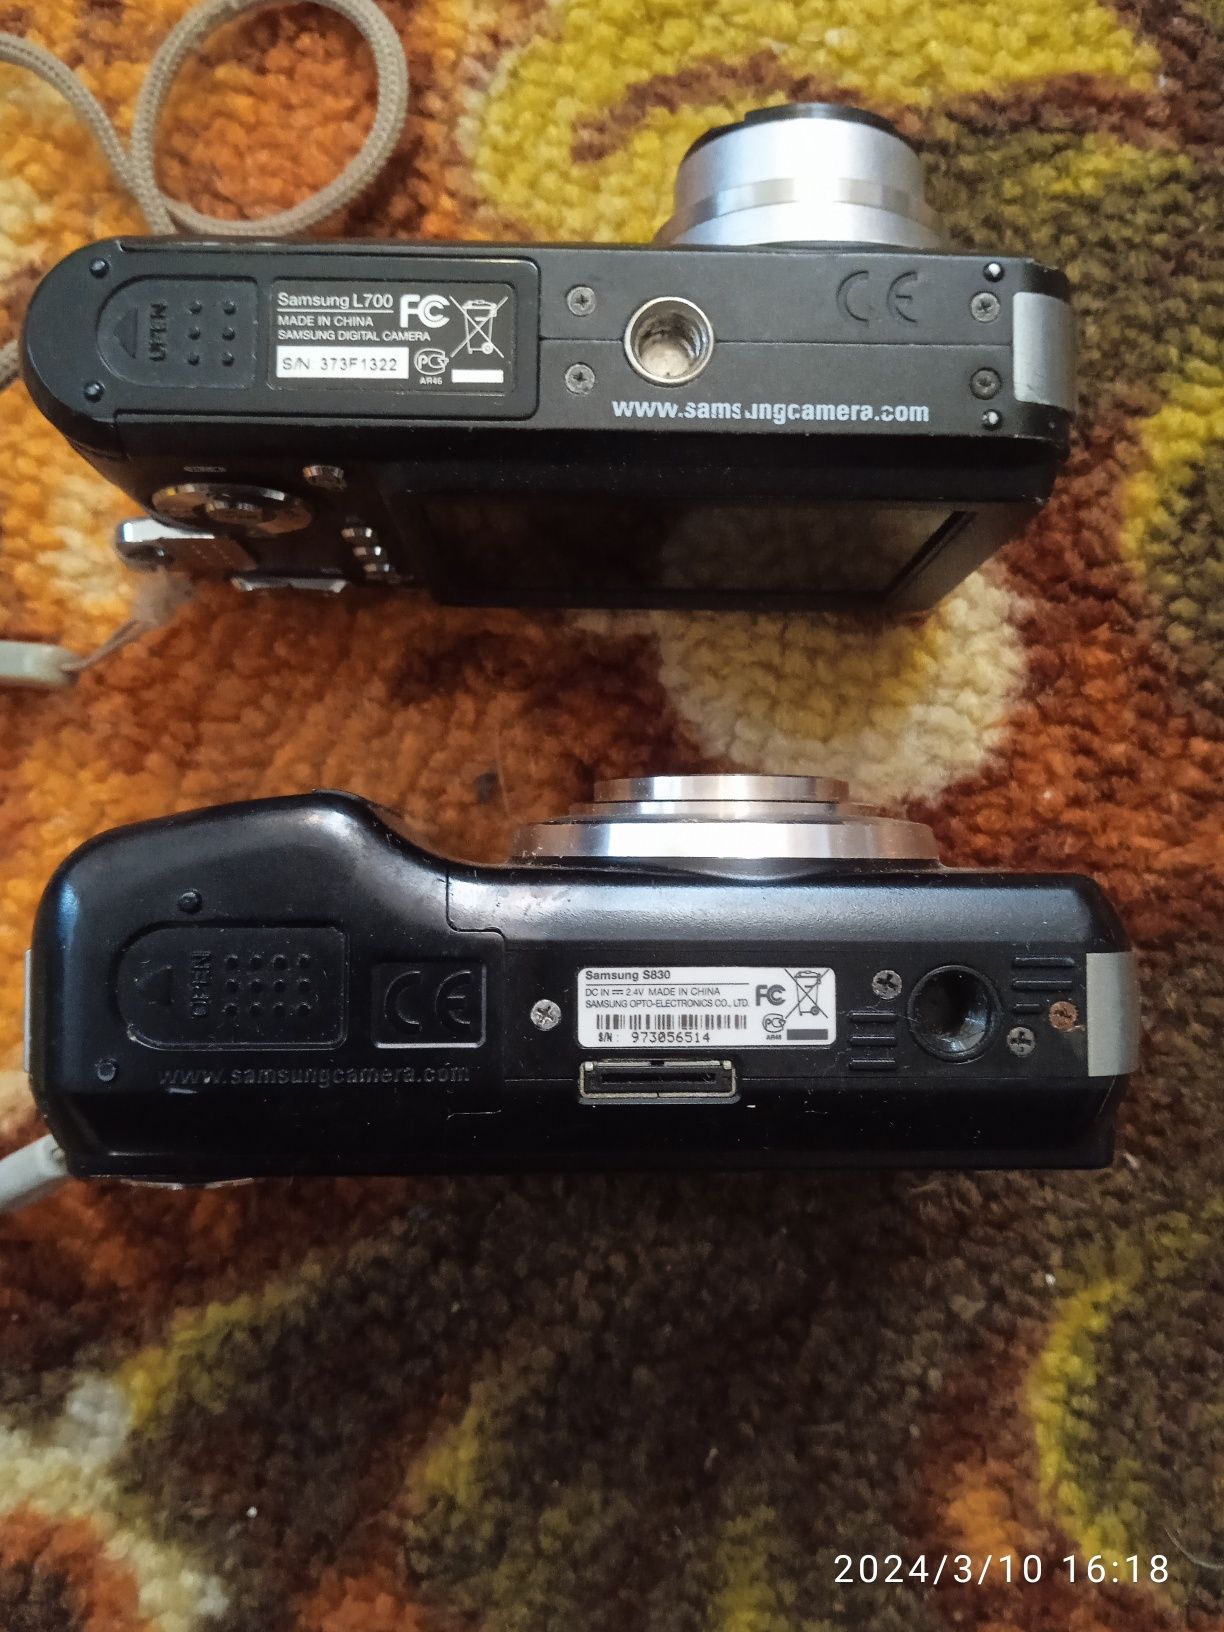 Продаються цифрові фотоапарати SAMSUNG S-830 і SAMSUNG L700